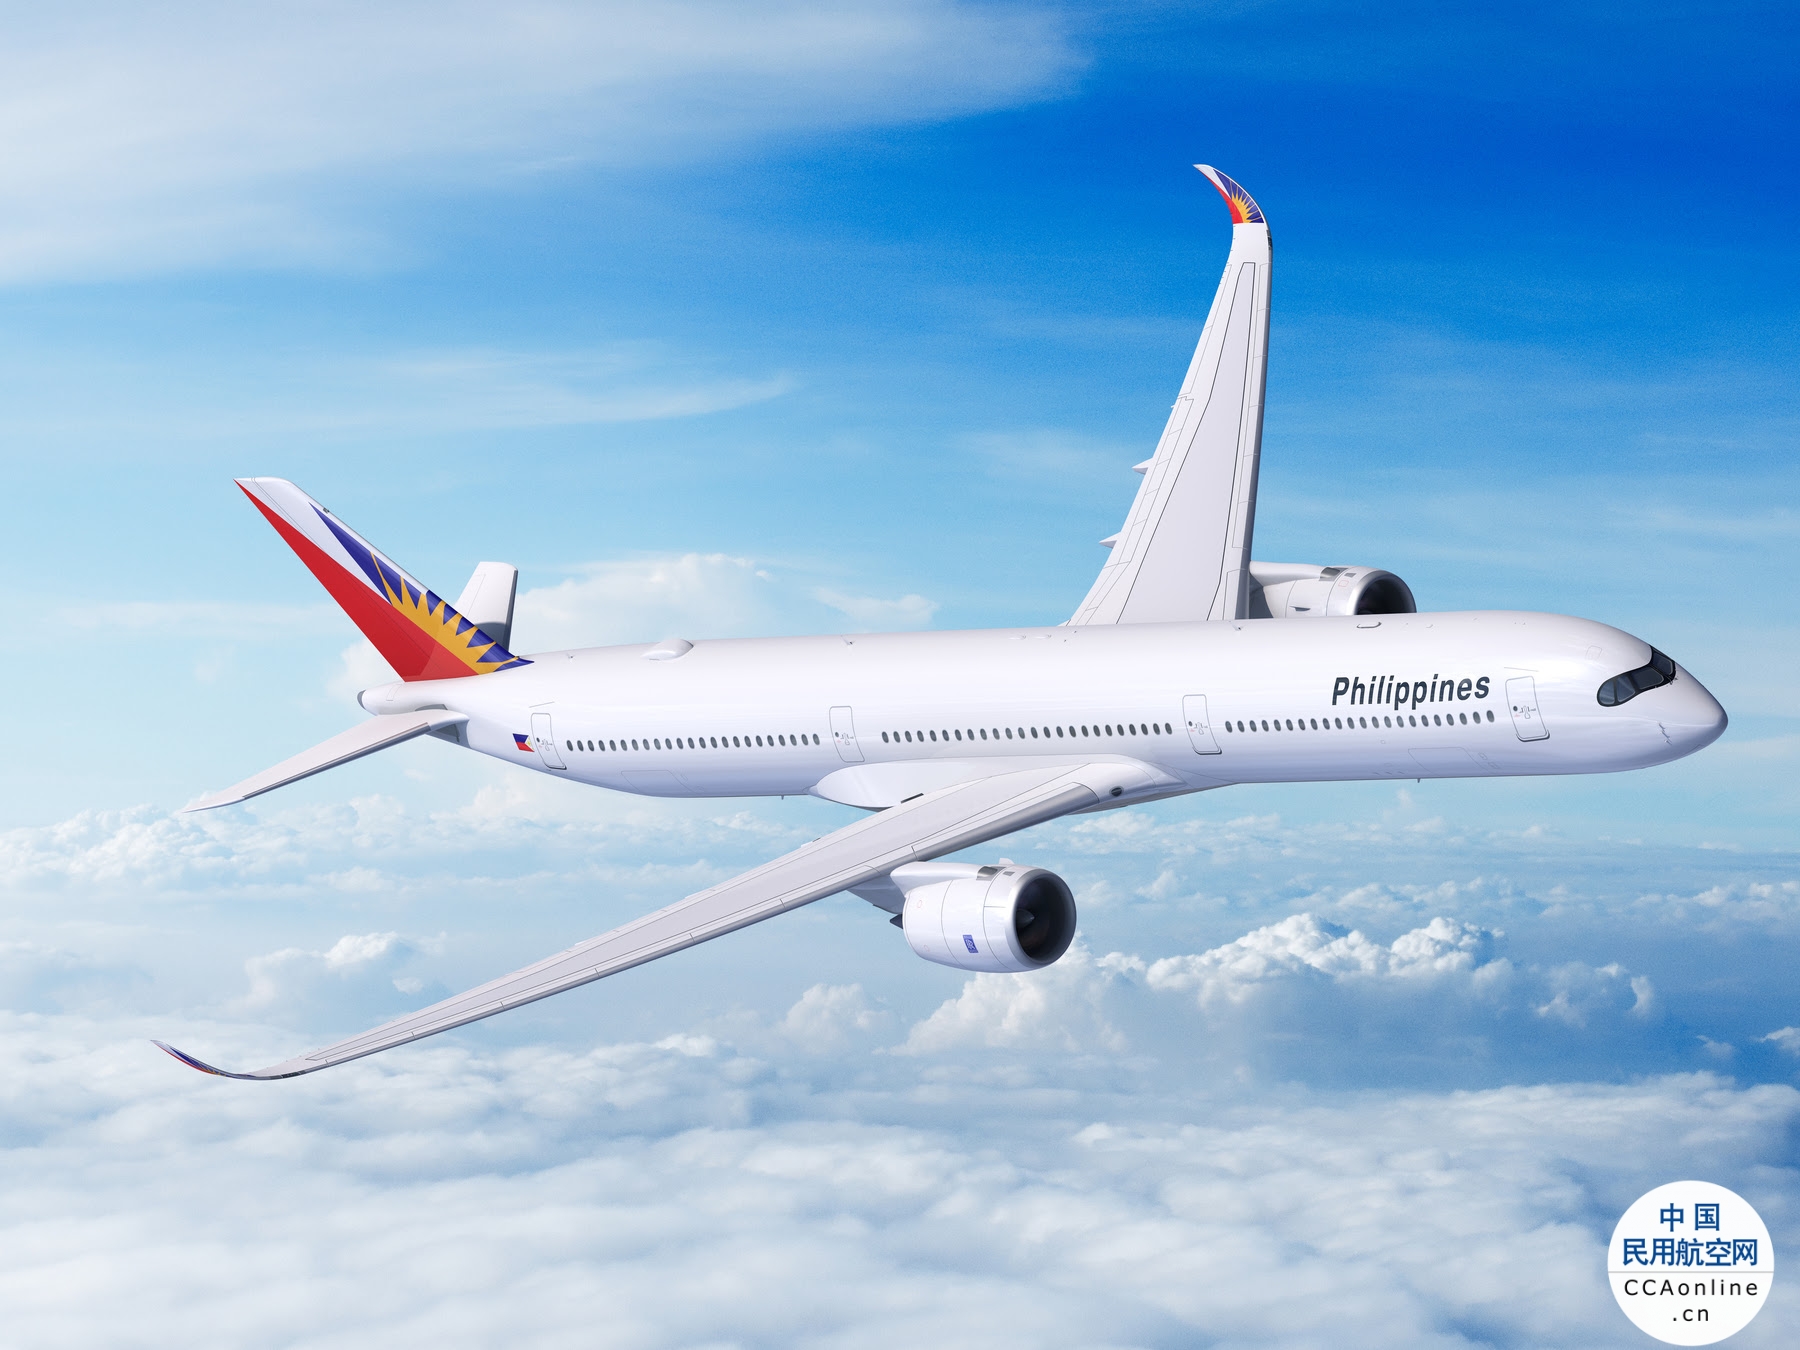 菲律宾航空选择空客A350-1000飞机打造未来远程机队